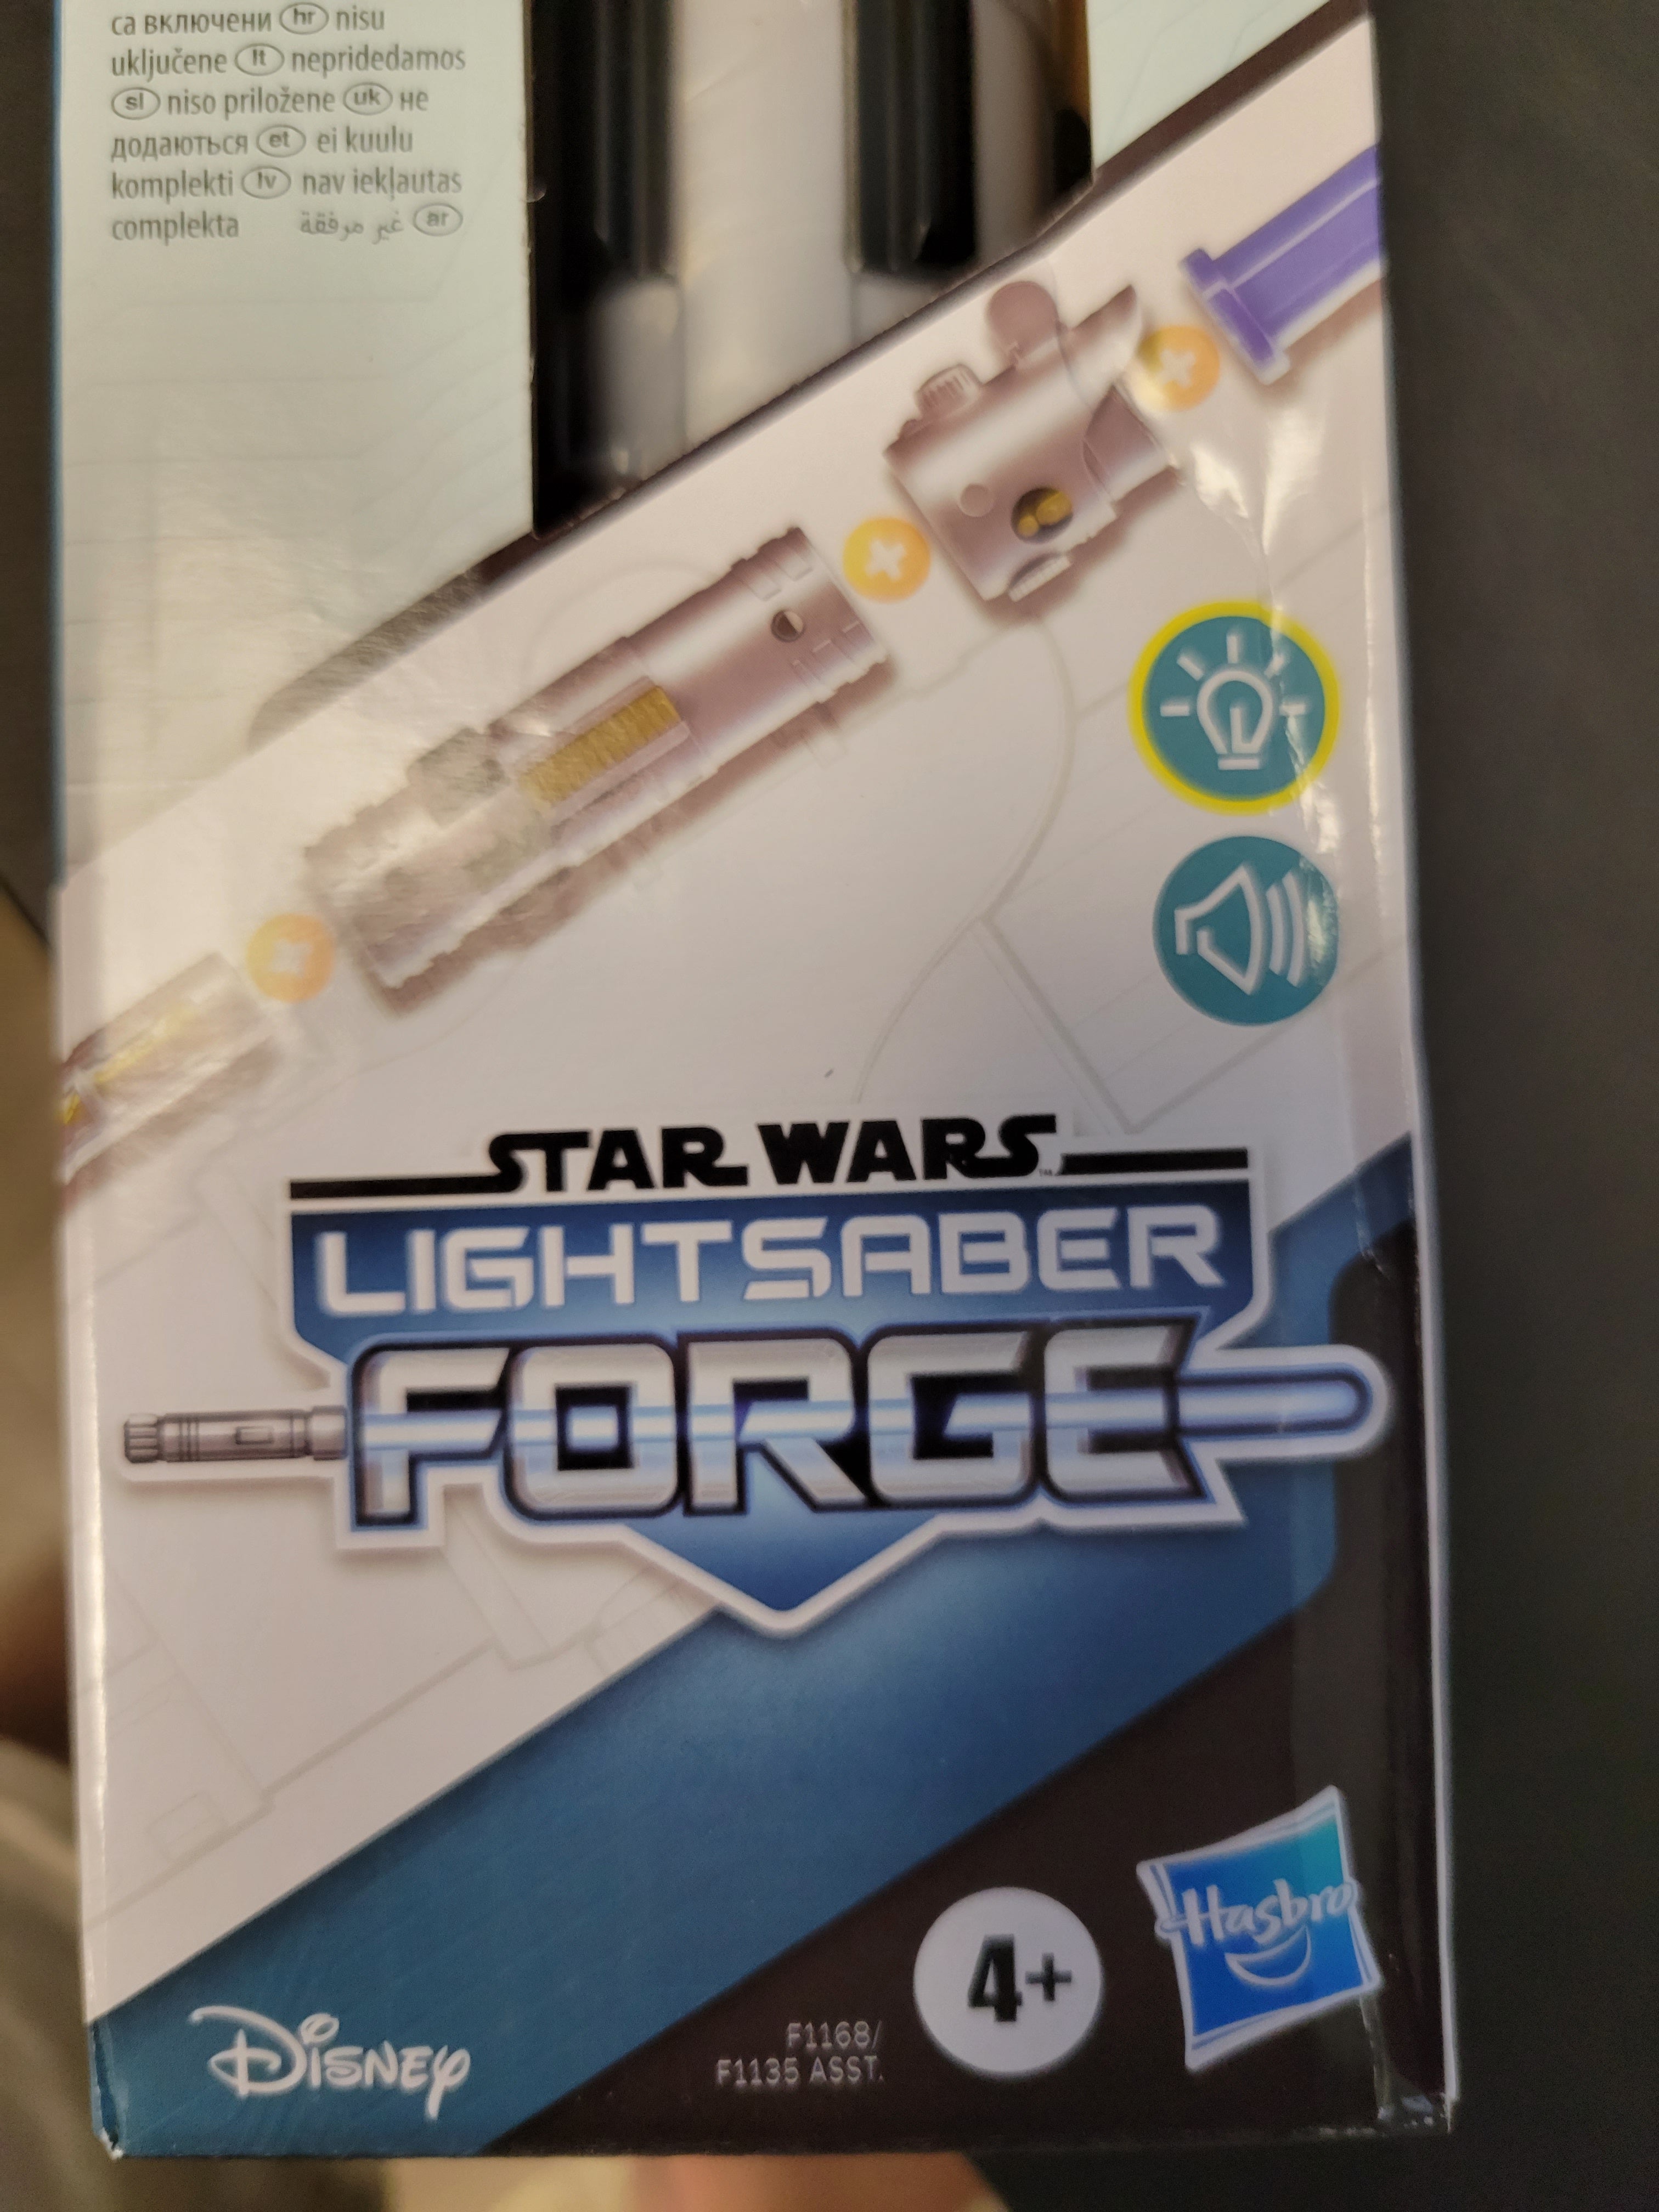 Star Wars Lightsaber Forge - Luke Skywalker Electronic Lightsaber with Sound FX